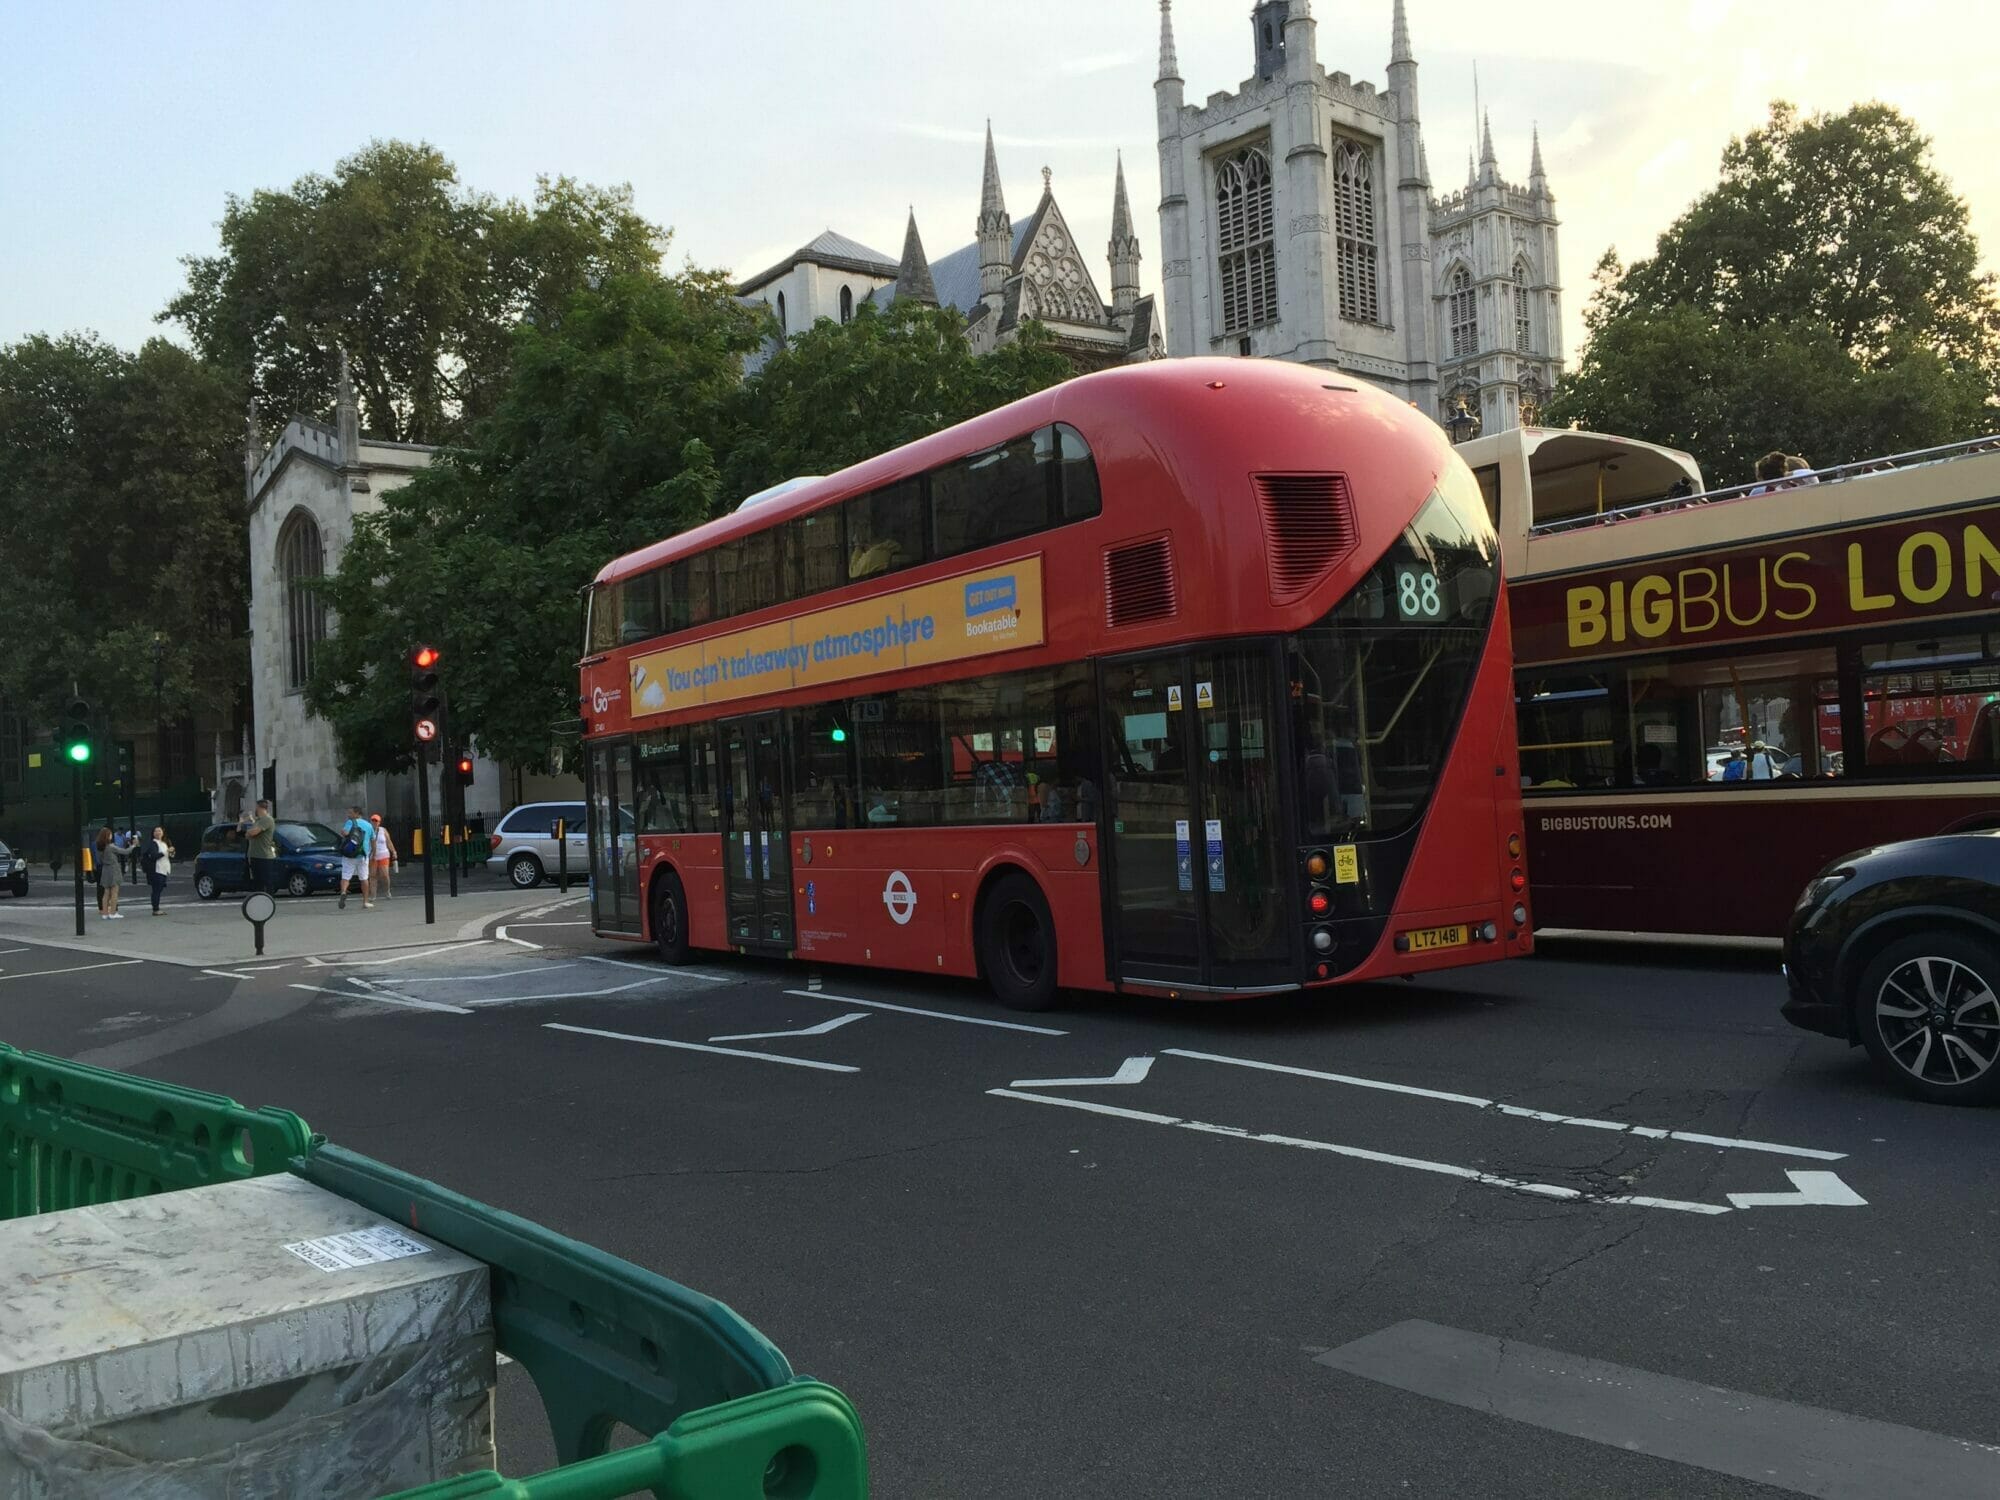 [Trip] ロンドンの赤バスはスタイリッシュだった(2016夏) [2019/07/28] ID21